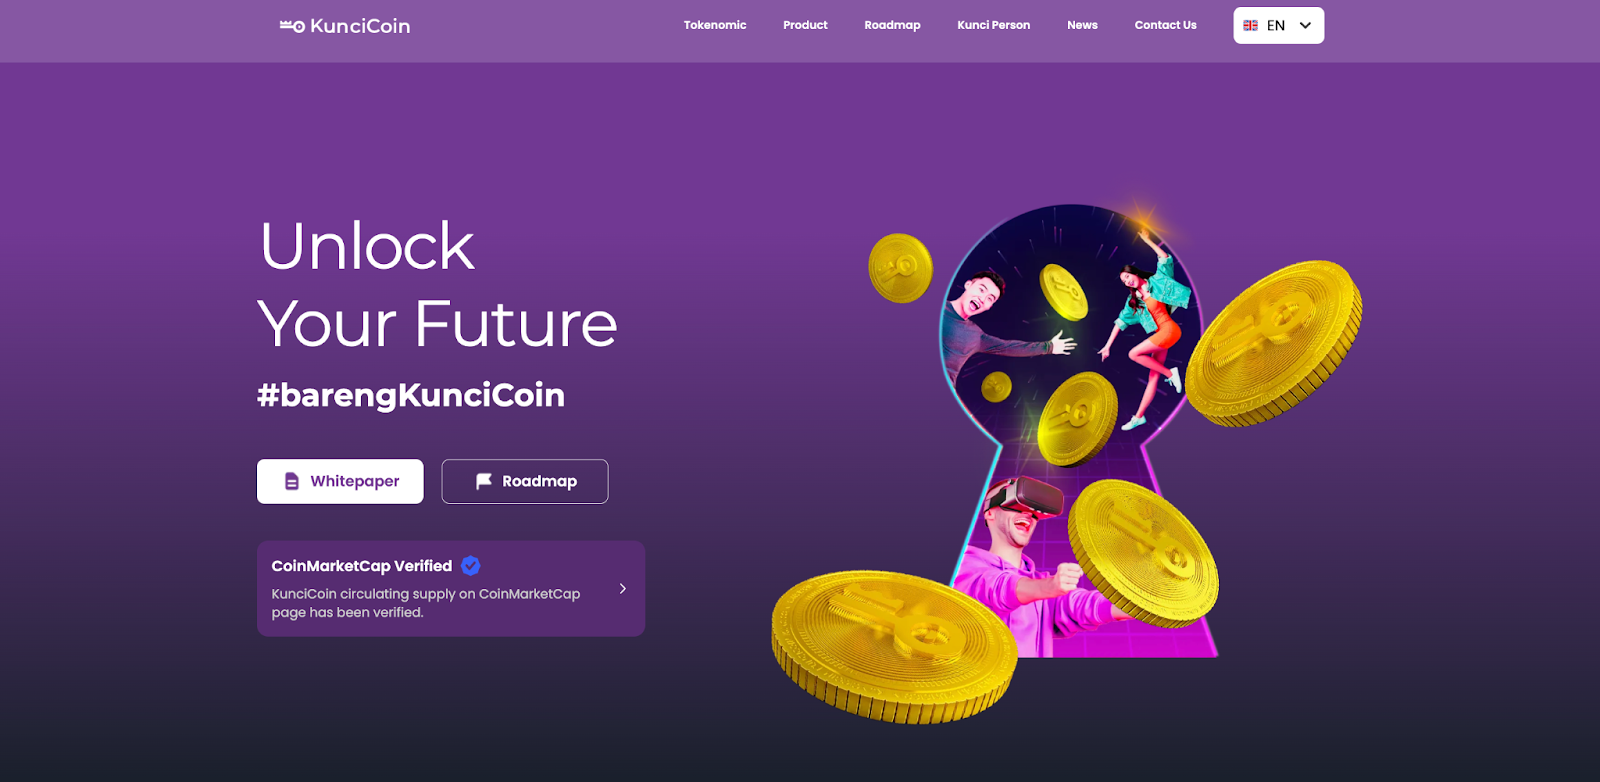 Screenshot from KunciCoin's official website